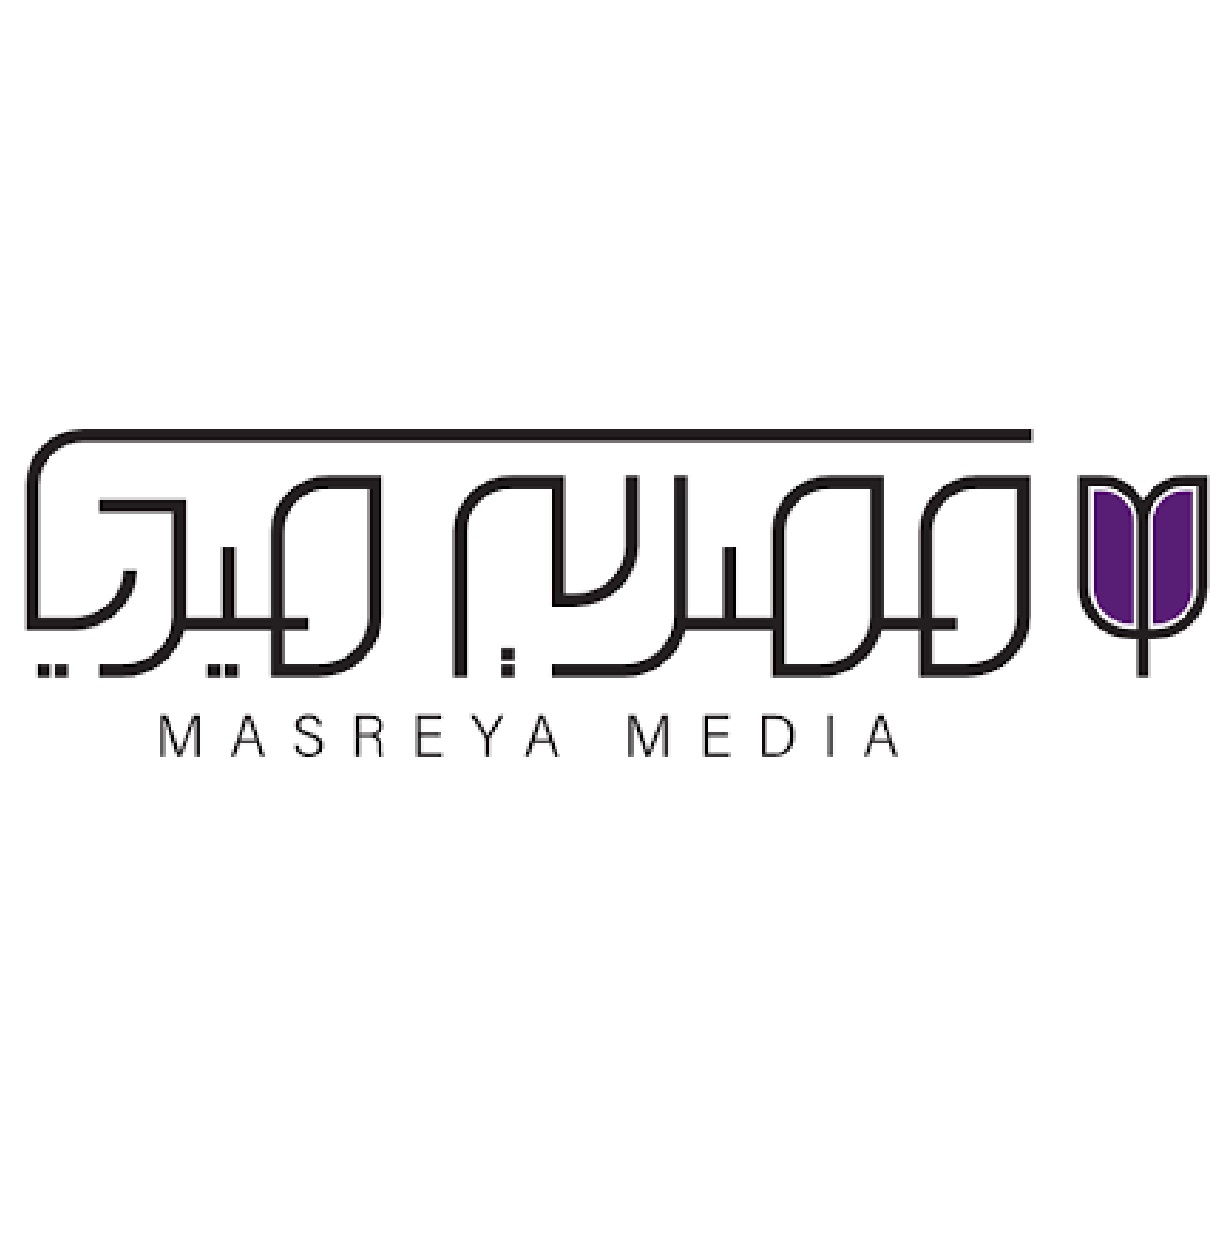 Masreya Media